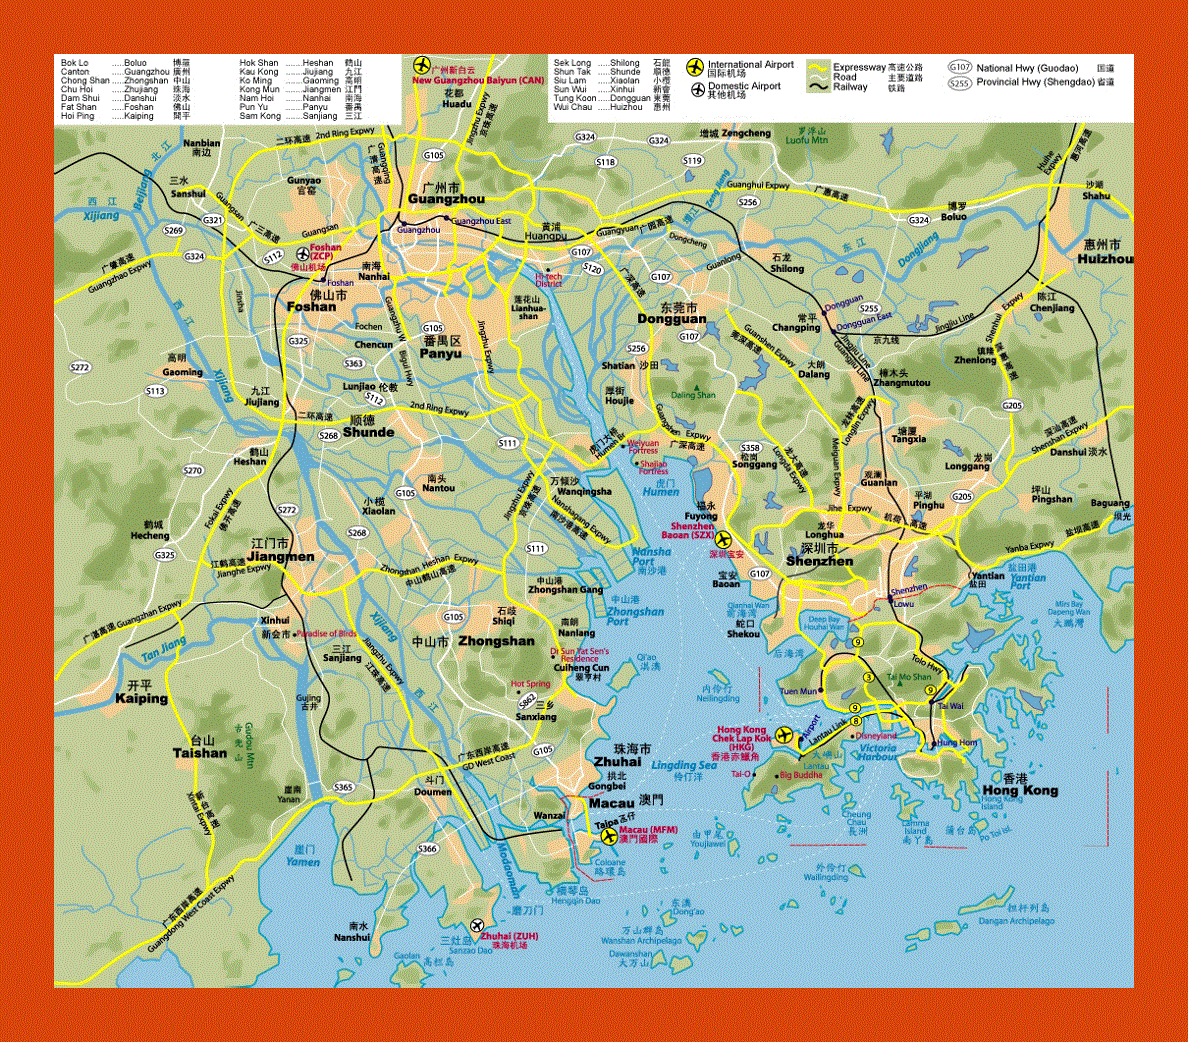 Highways map of Hong Kong, Shenzhen, Guangzhou and Macau Region